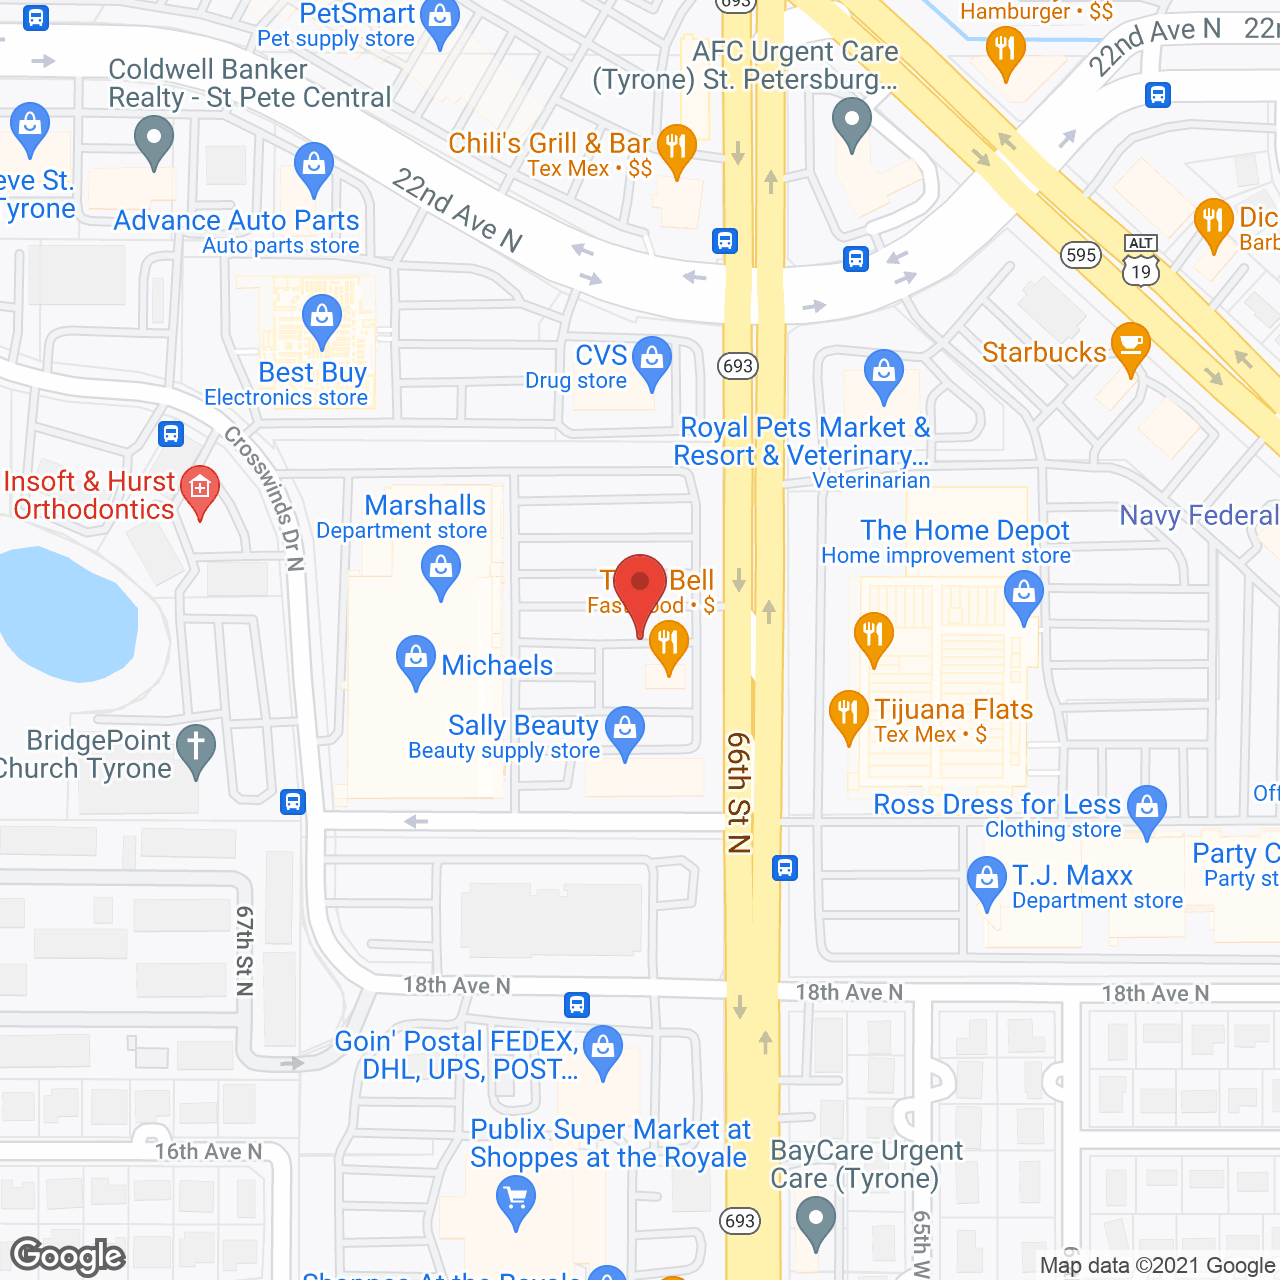 American House St. Petersburg in google map